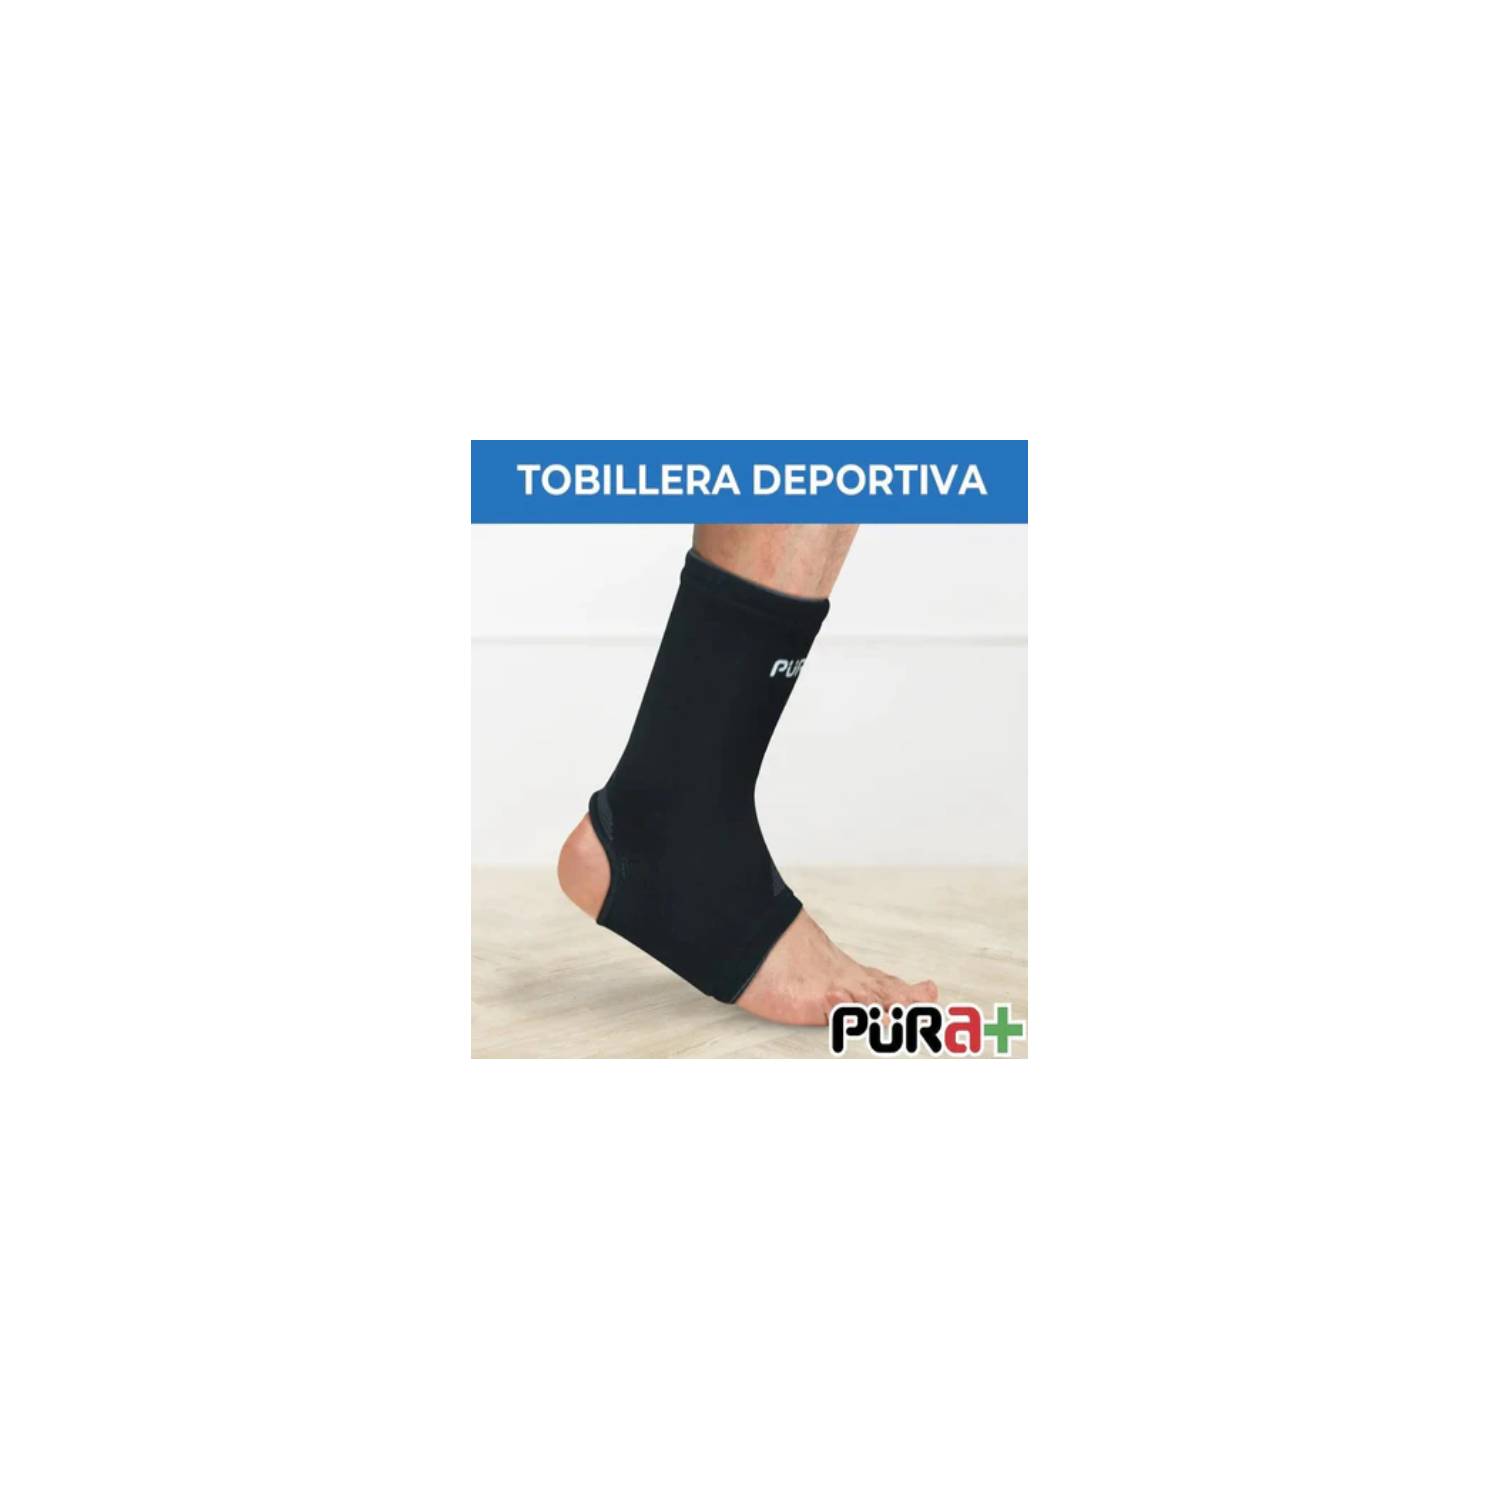 TOBILLERA ORTESIS TALLA L-XL PURA falabella.com